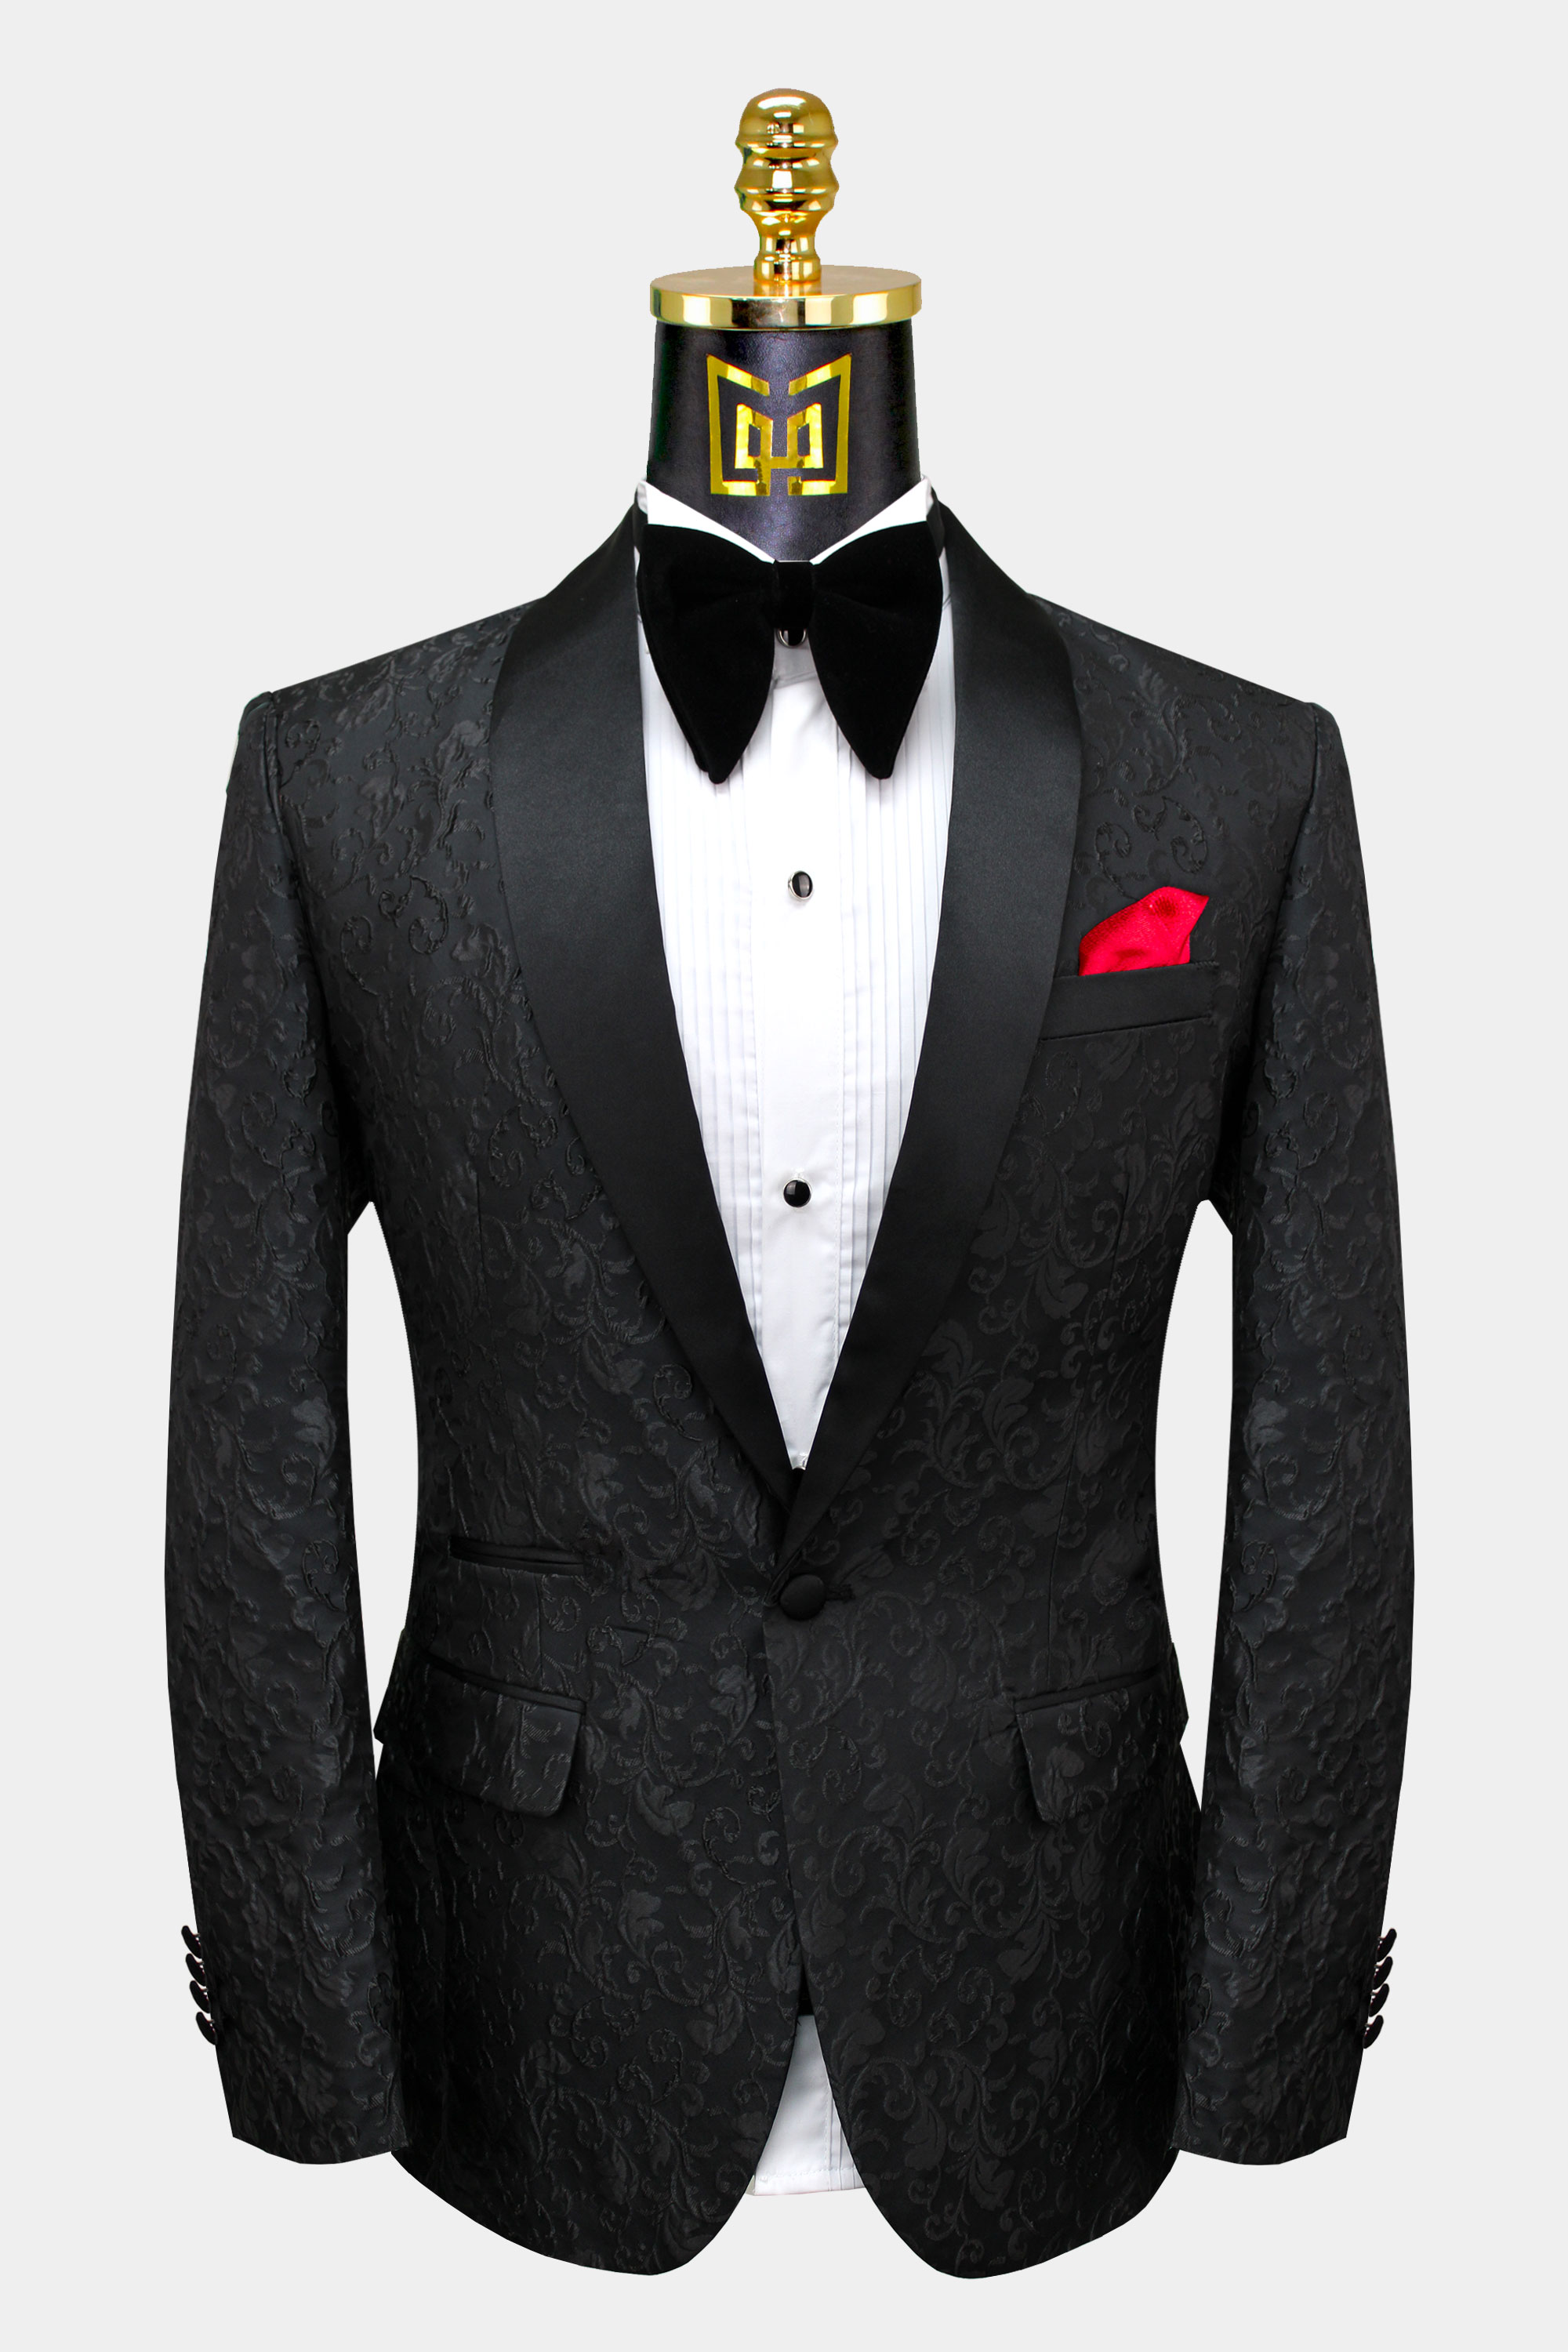 Men’s Black Suit Jacket eventos.sbd.org.br